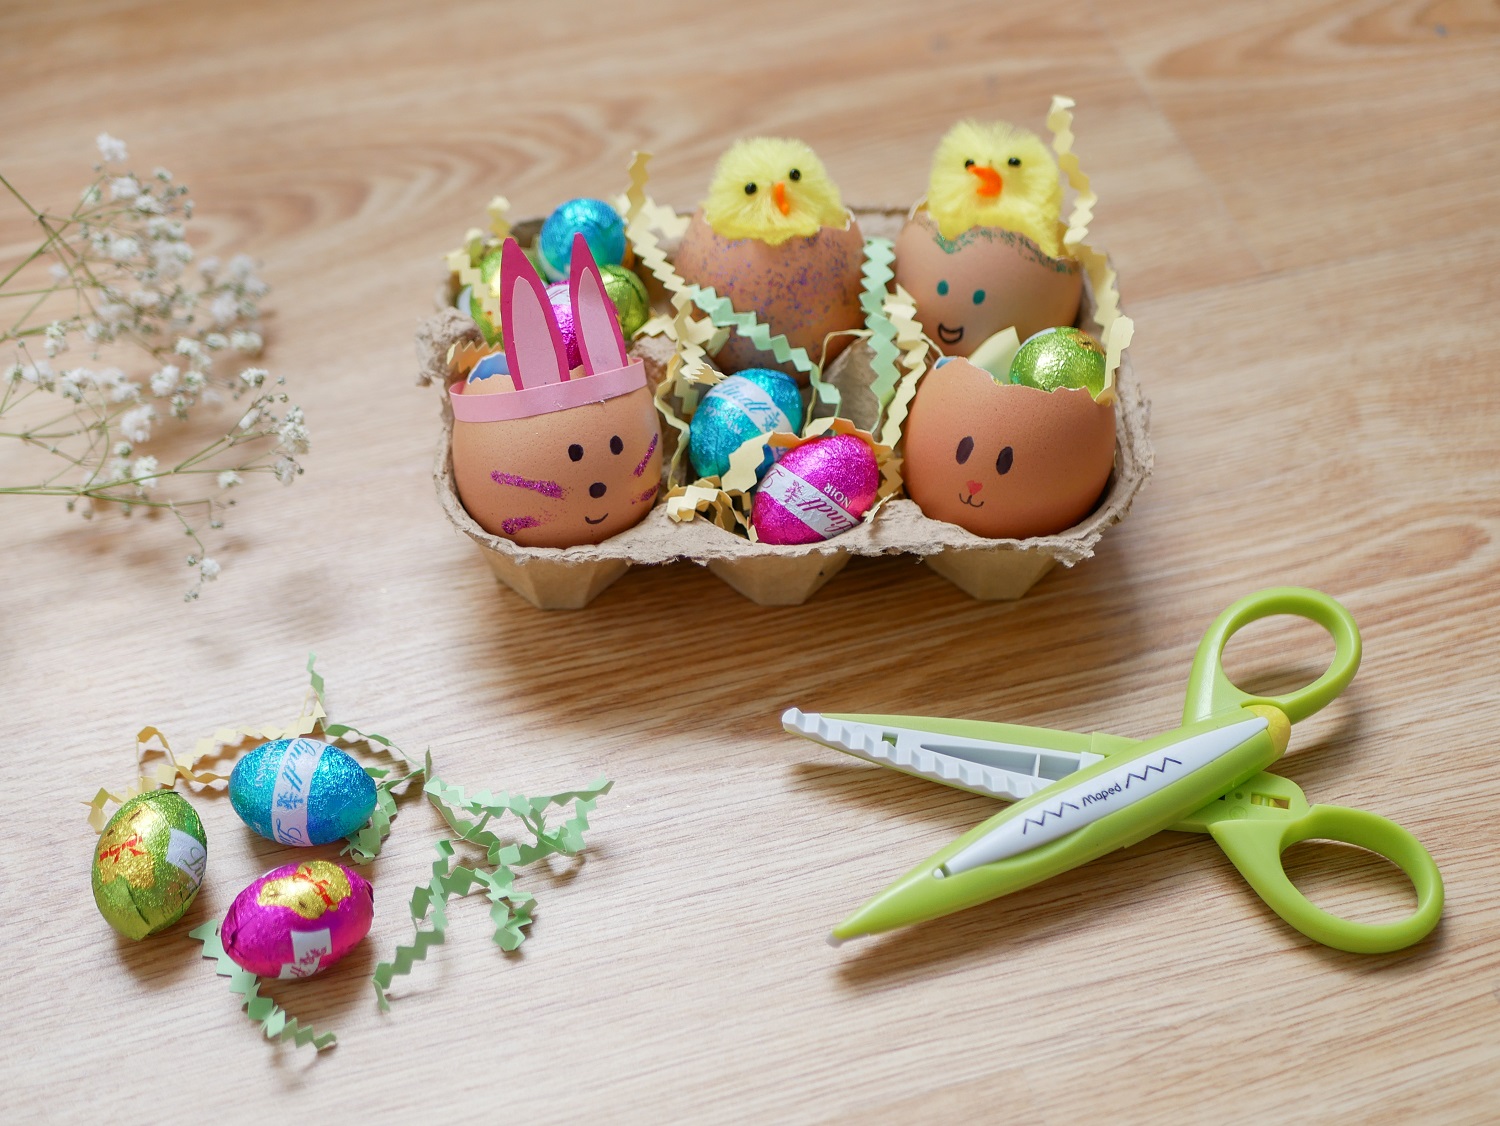 Atelier enfant : faire des œufs de Pâques originaux avec des